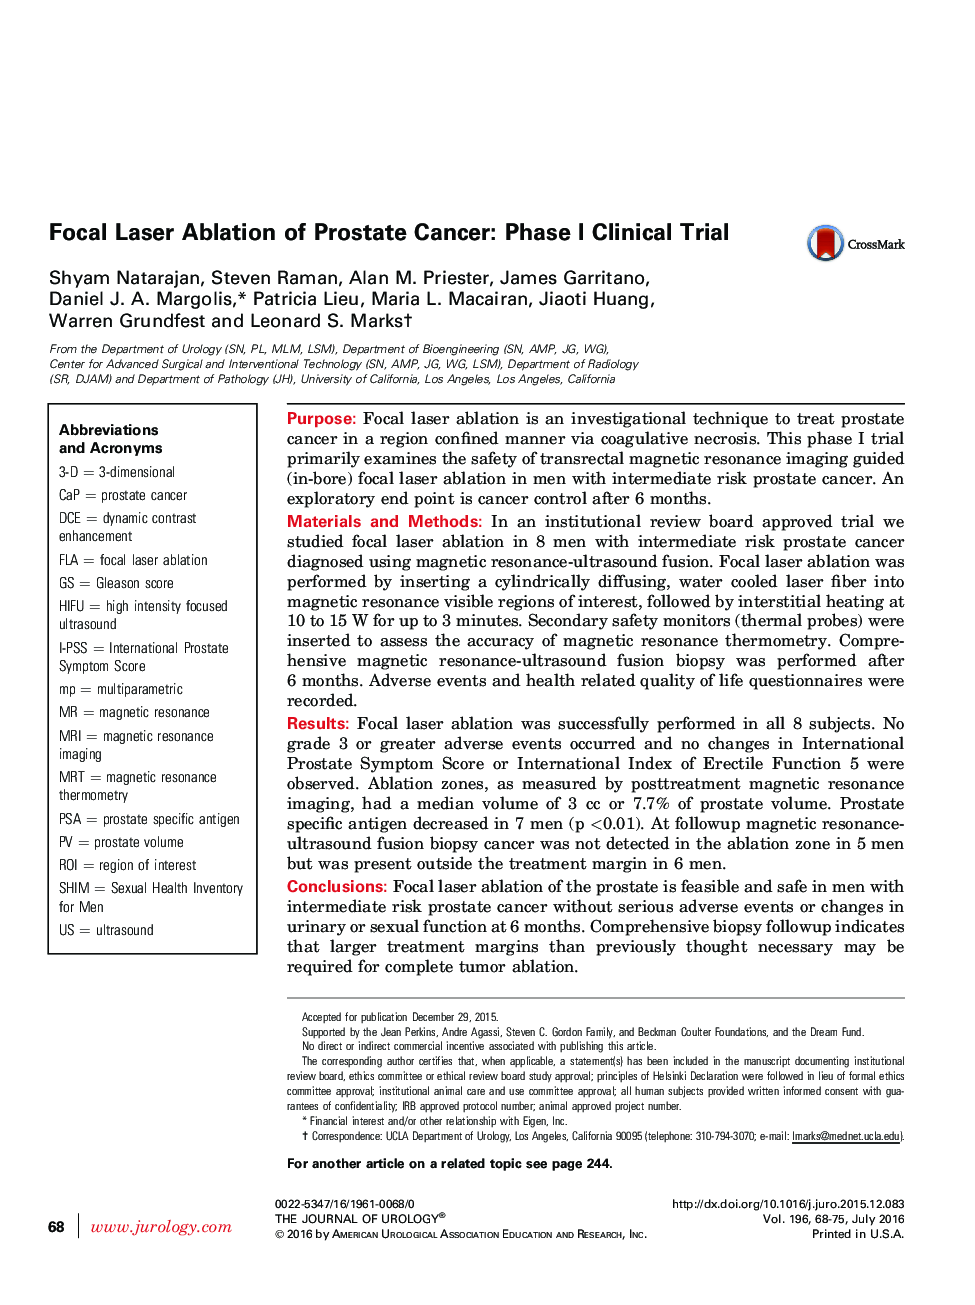 فرسایش لیزری کانونی سرطان پروستات: مطالعات بالینی فاز